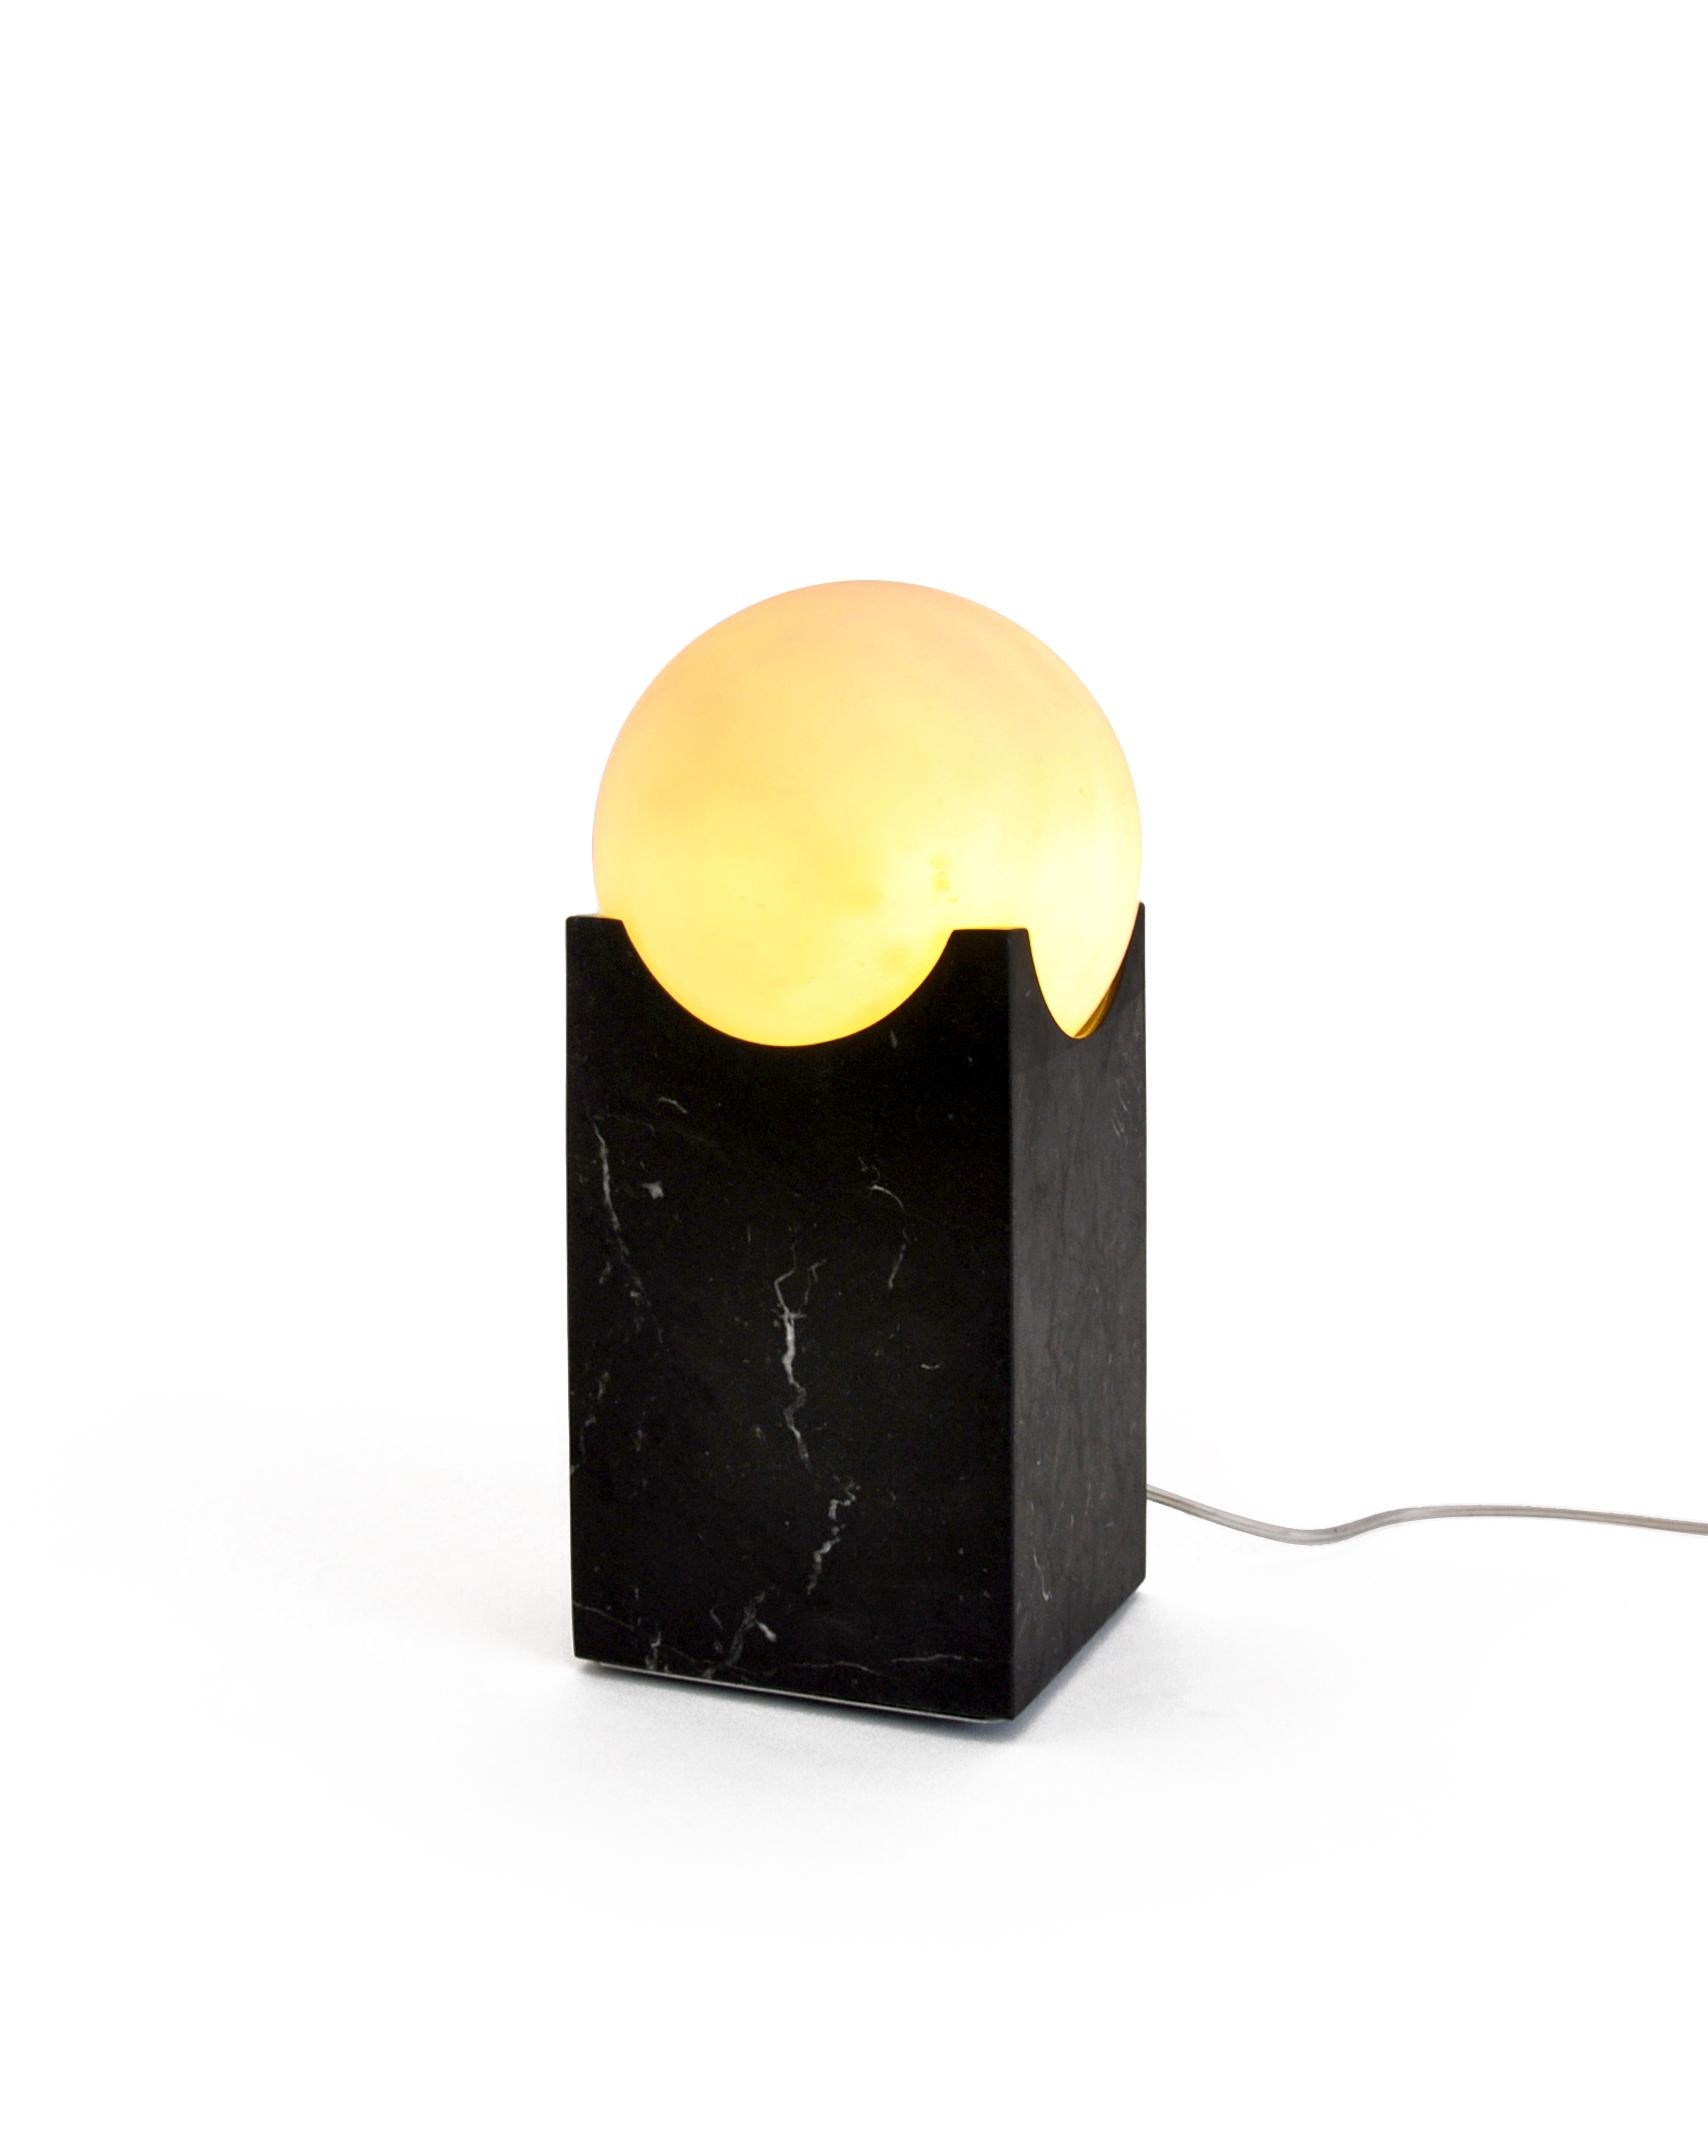 Kleine Eclipse-Lampe aus satiniertem Paonazzo oder schwarzem Marquina-Marmor. Er verleiht Ihrem Haus eine besondere und elegante Note.

Jedes Stück ist ein Unikat (jeder Marmorblock hat eine andere Maserung und Schattierung) und wird von